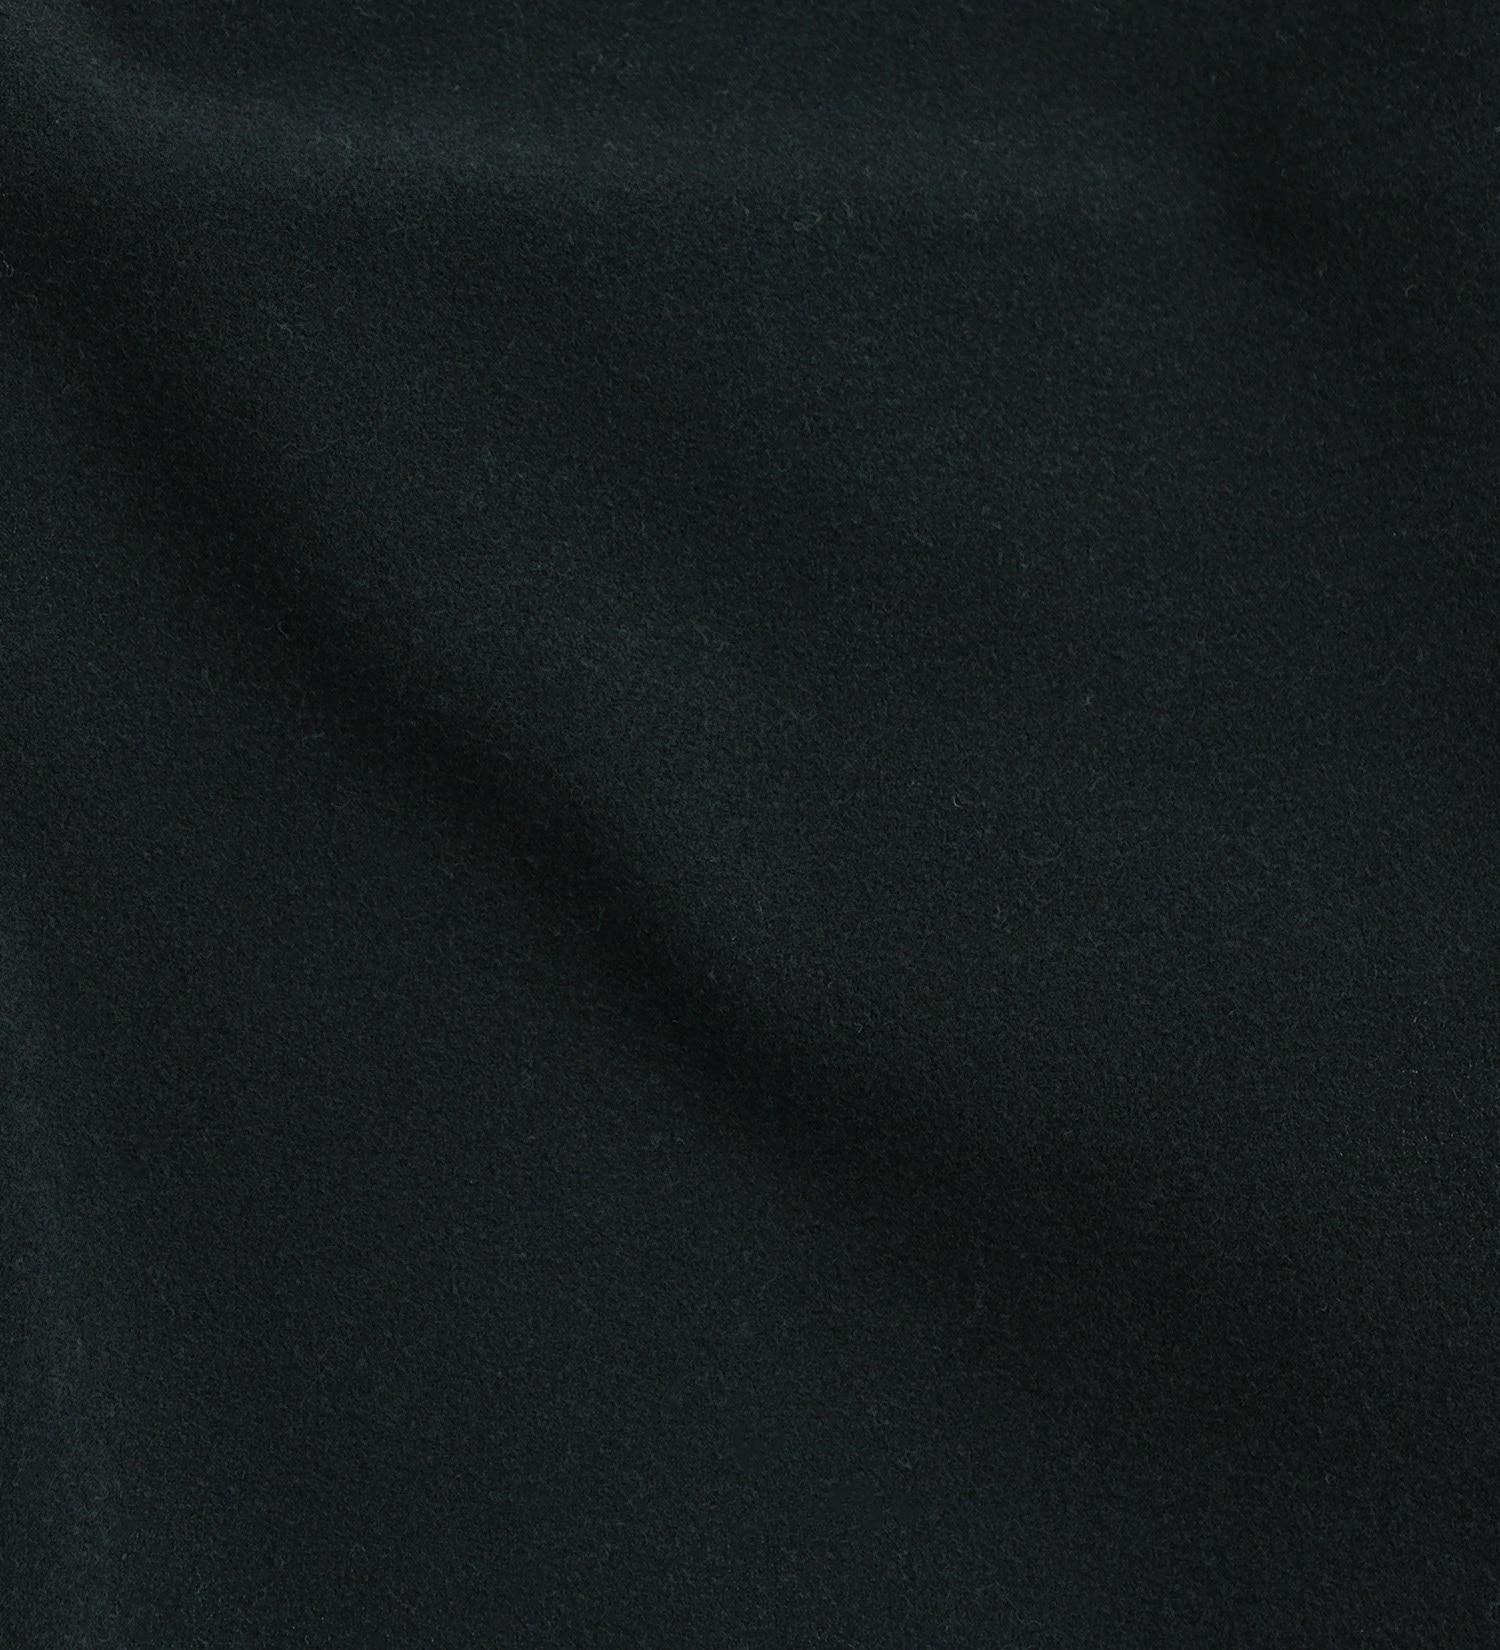 EDWIN(エドウイン)の【BLACKFRIDAY】2層で暖かい EDWIN インターナショナルベーシック レギュラーストレートパンツ403 WILD FIRE 2層ボンディング構造 【暖】|パンツ/パンツ/メンズ|濃色ブルー